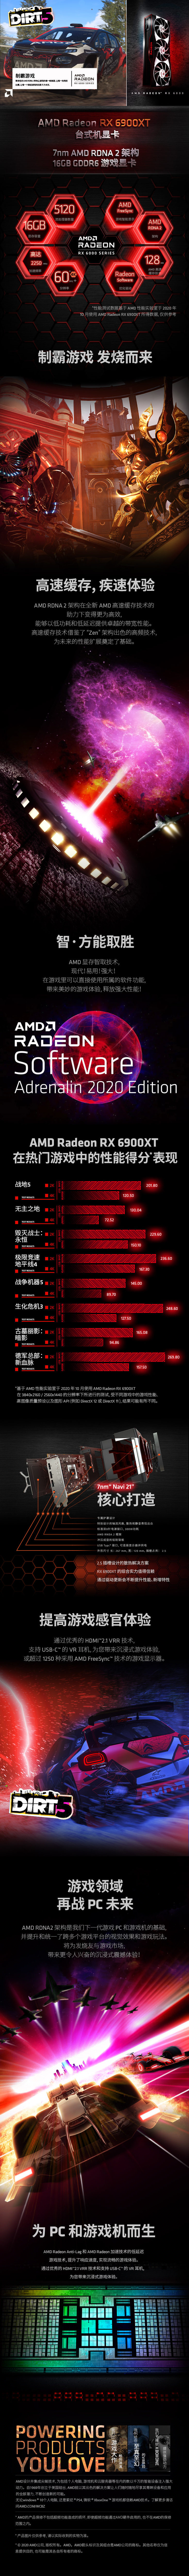 AMD中国电商视觉设计图1